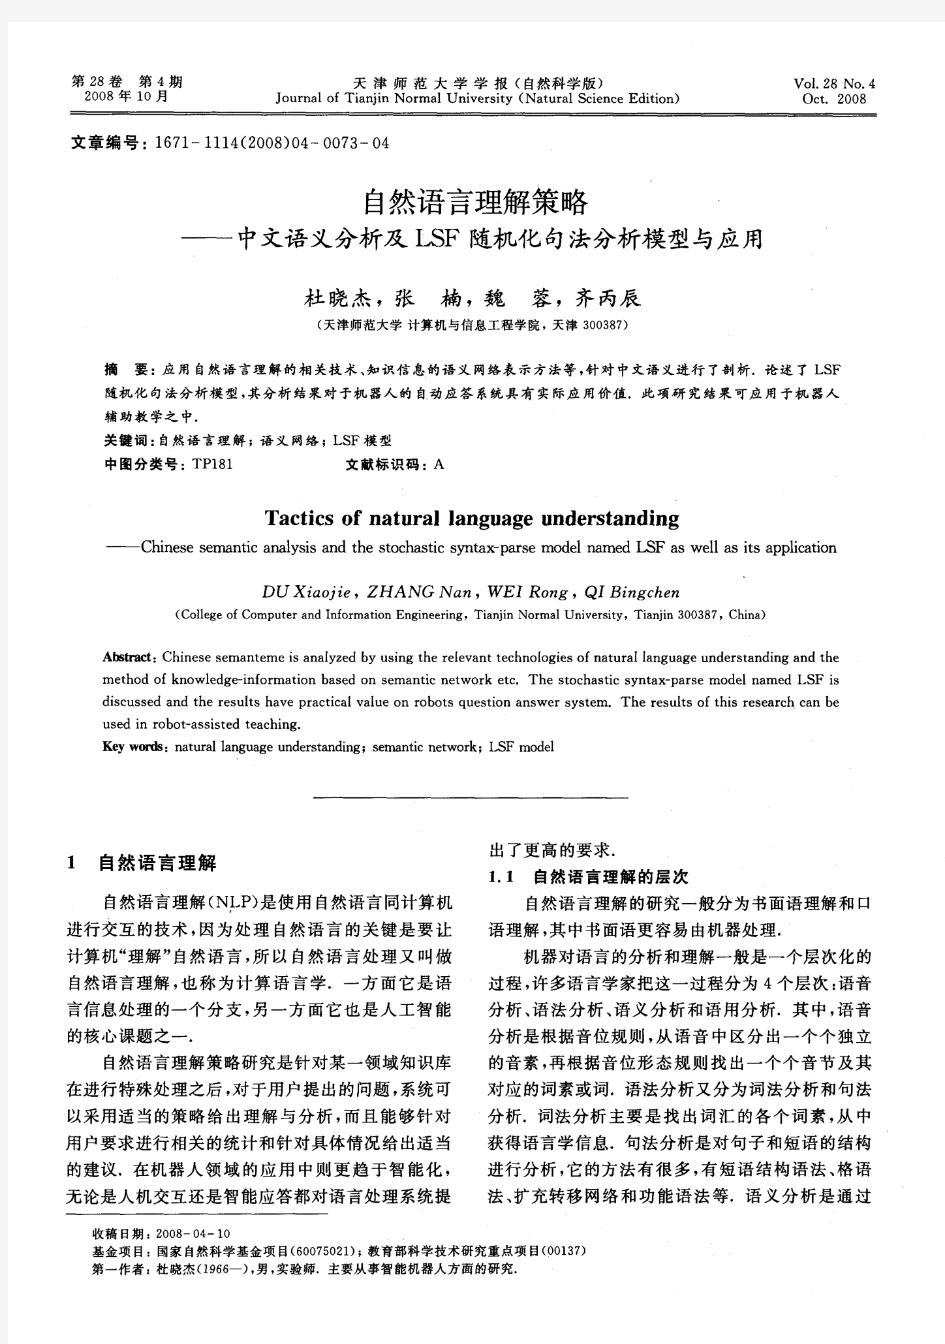 自然语言理解策略——中文语义分析及LSF随机化句法分析模型与应用